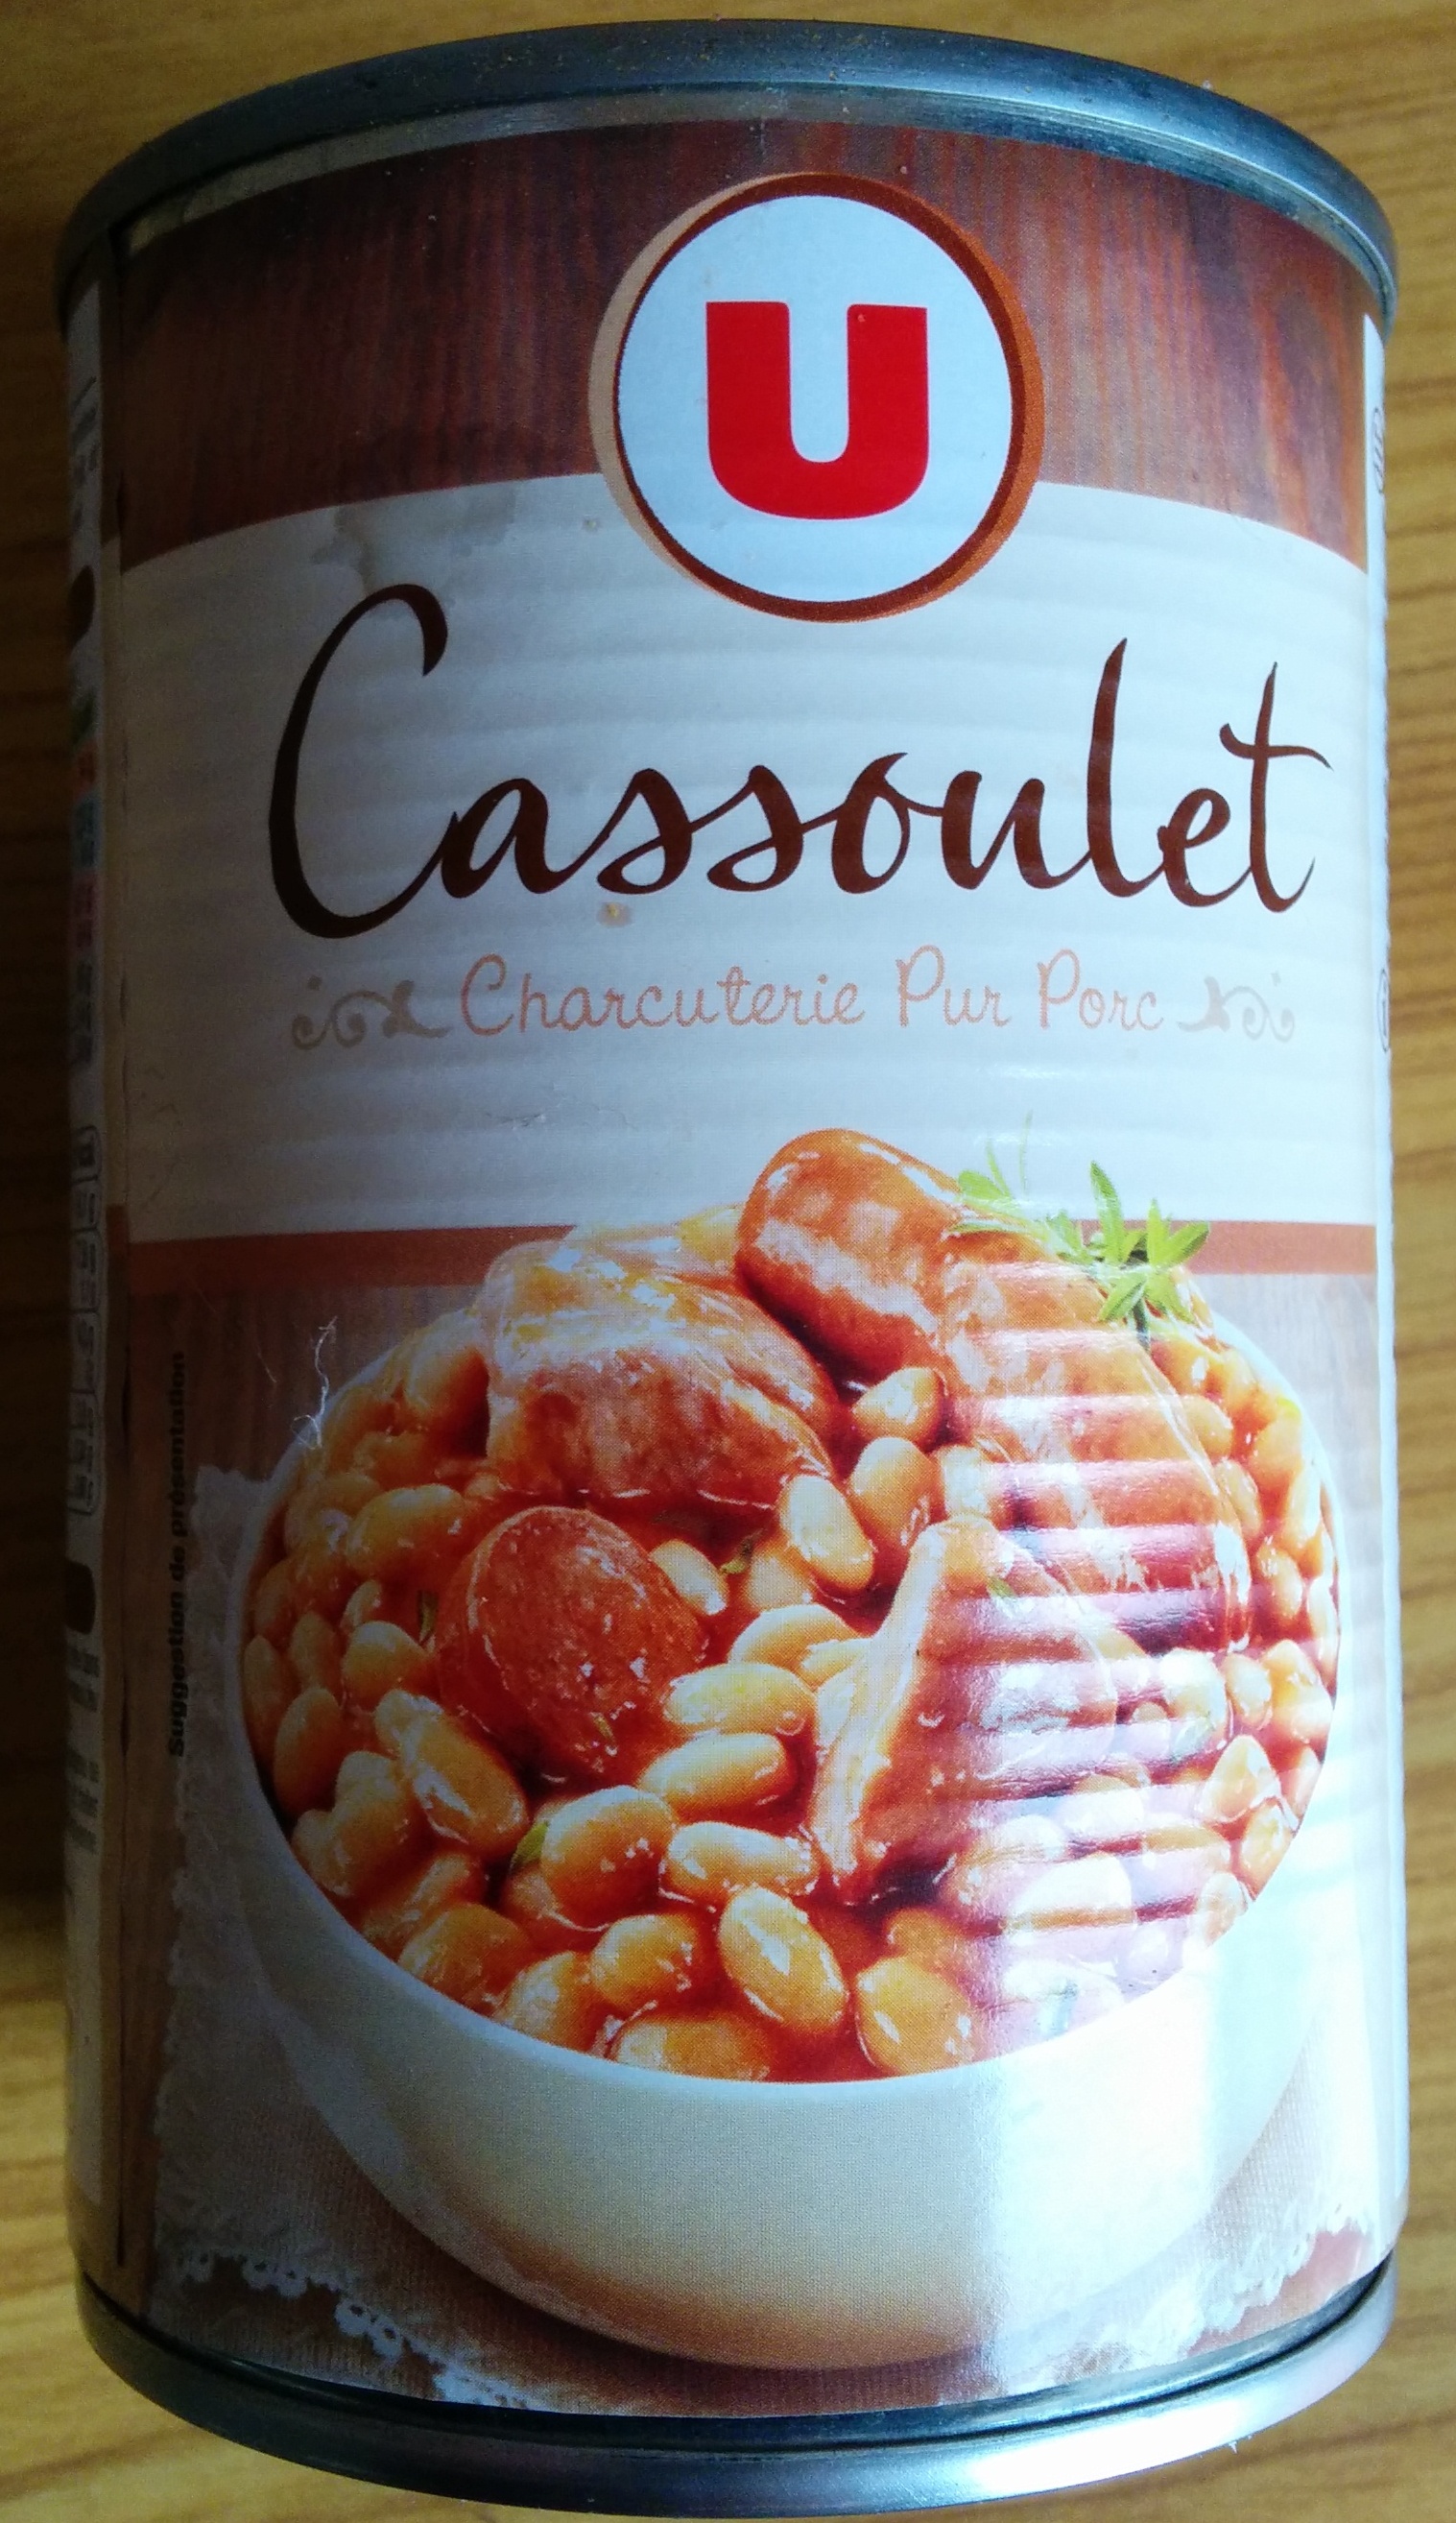 Cassoulet - Charcuterie Pur Porc - Product - fr